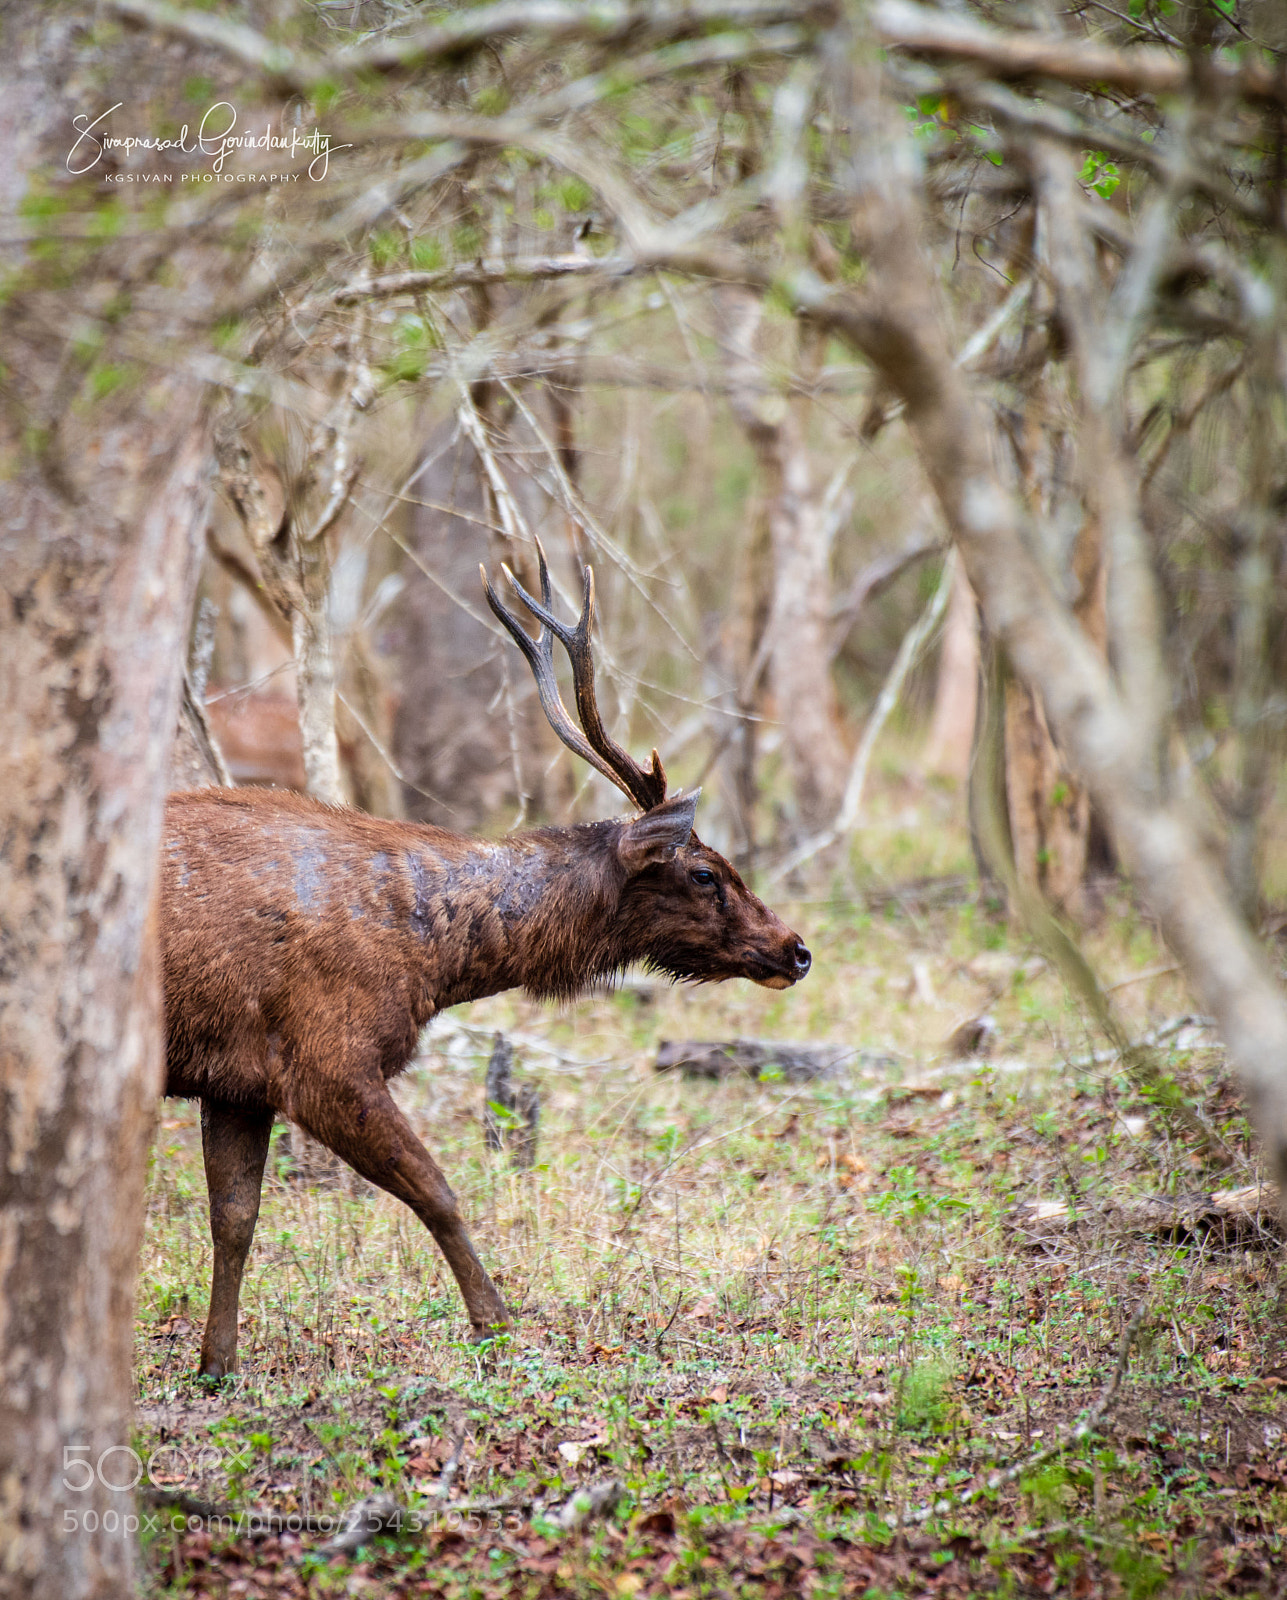 Nikon D850 sample photo. Sambar deer photography